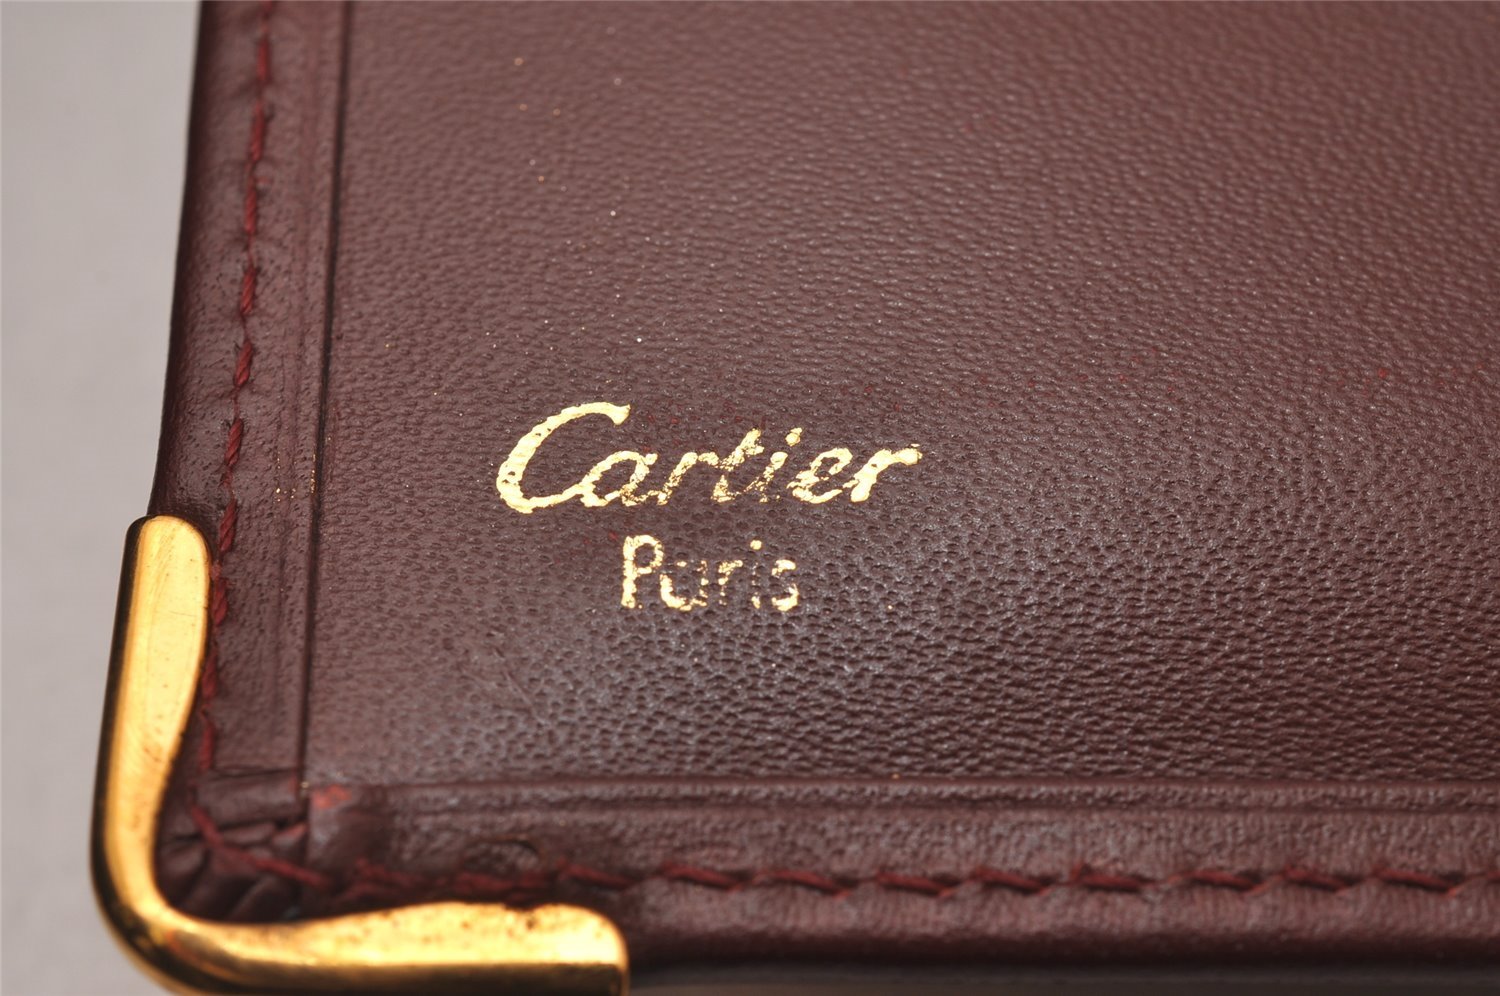 Authentic Cartier Must de Cartier Long Wallet Purse Leather Bordeaux Red 6806I